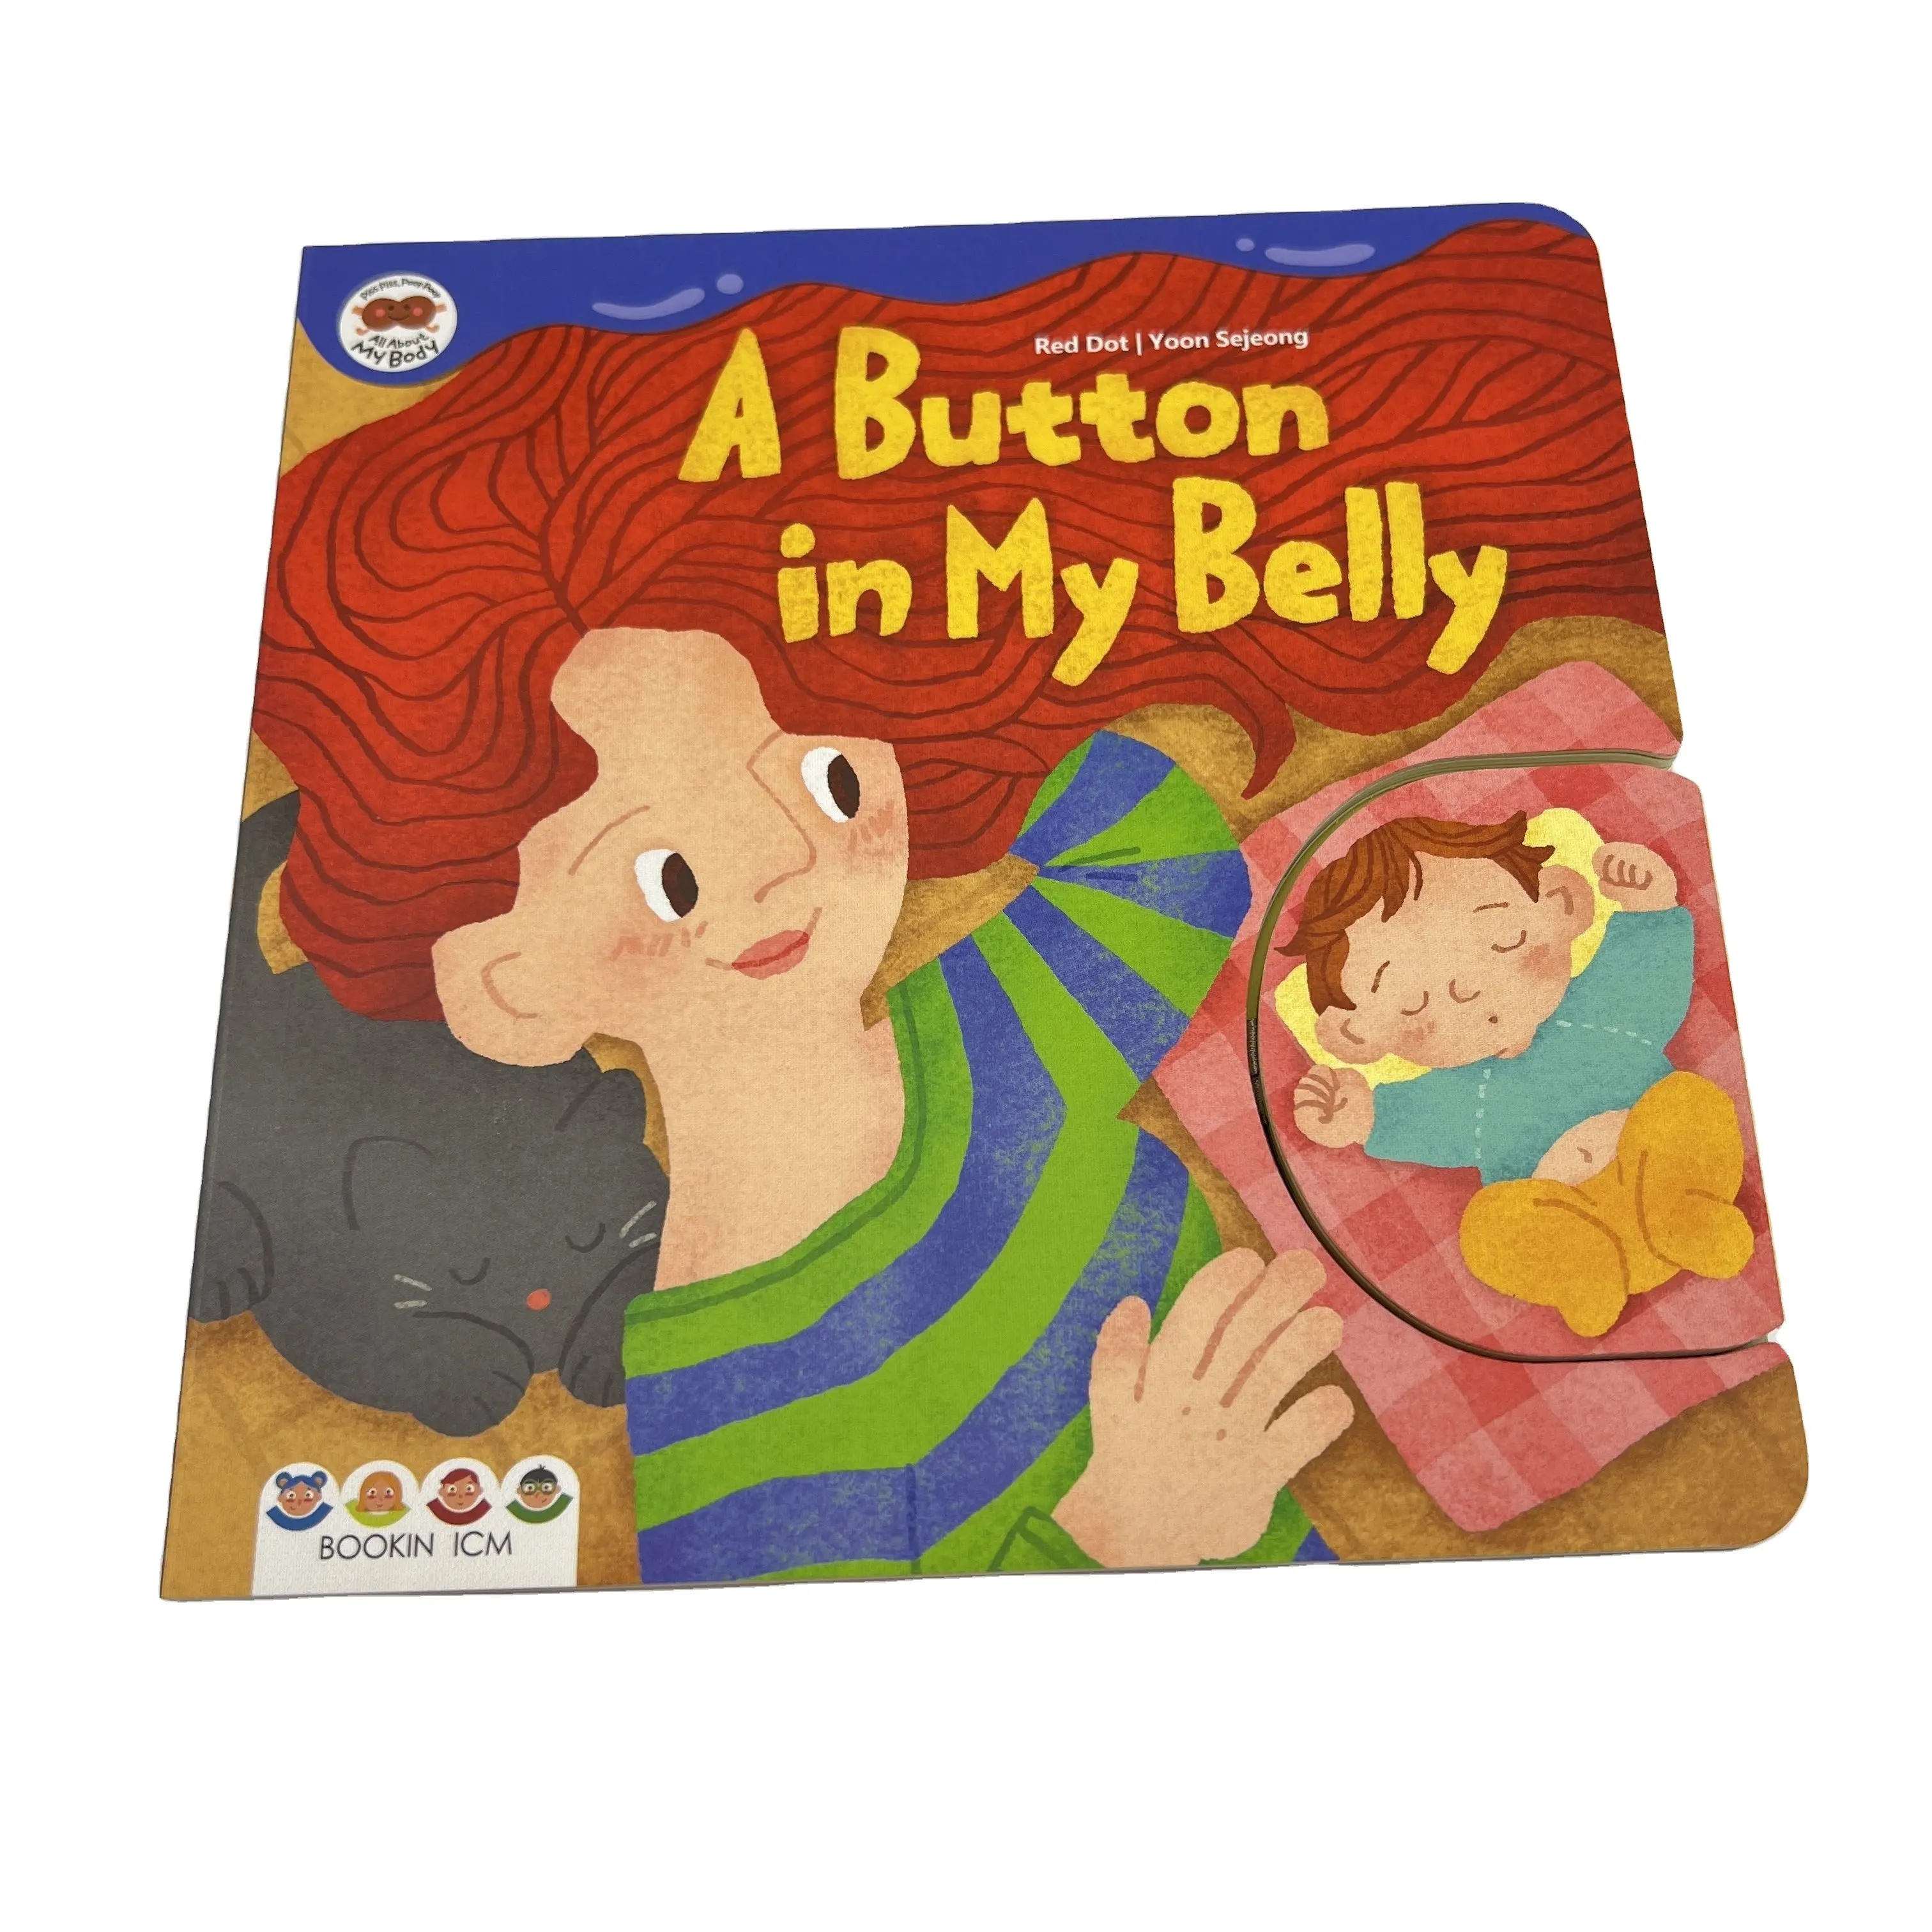 Kinder-speziell geformtes Buch Es ist geeignet für die frühe Entwicklung und Erziehung von Kindern kundenspezifischer Karton kundenspezifisch